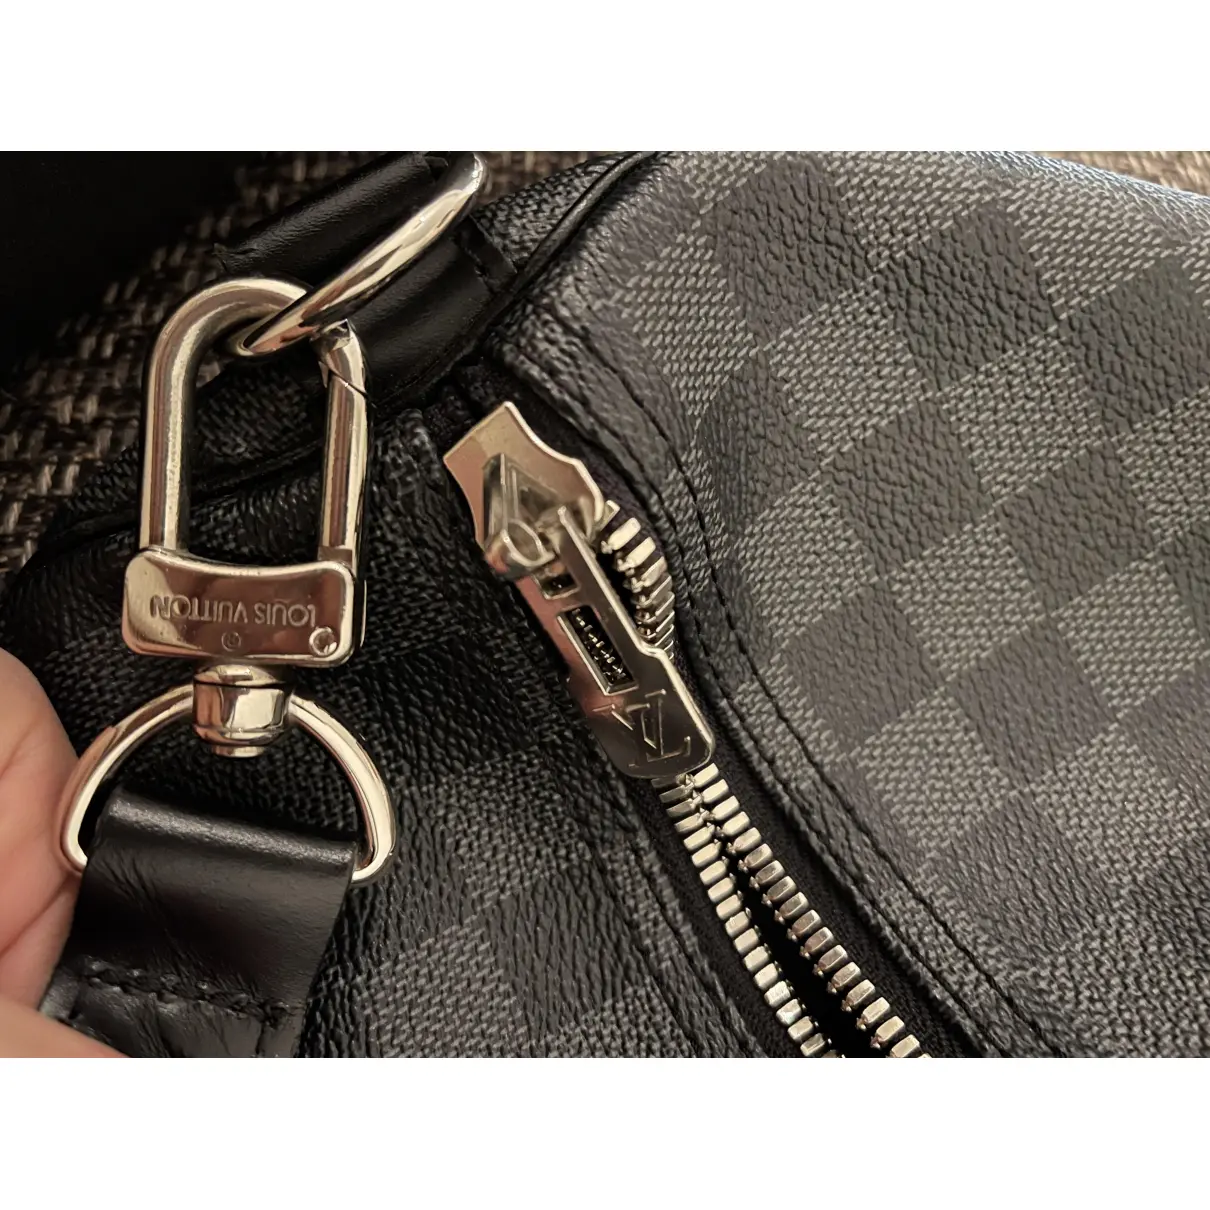 Keepall cloth travel bag Louis Vuitton